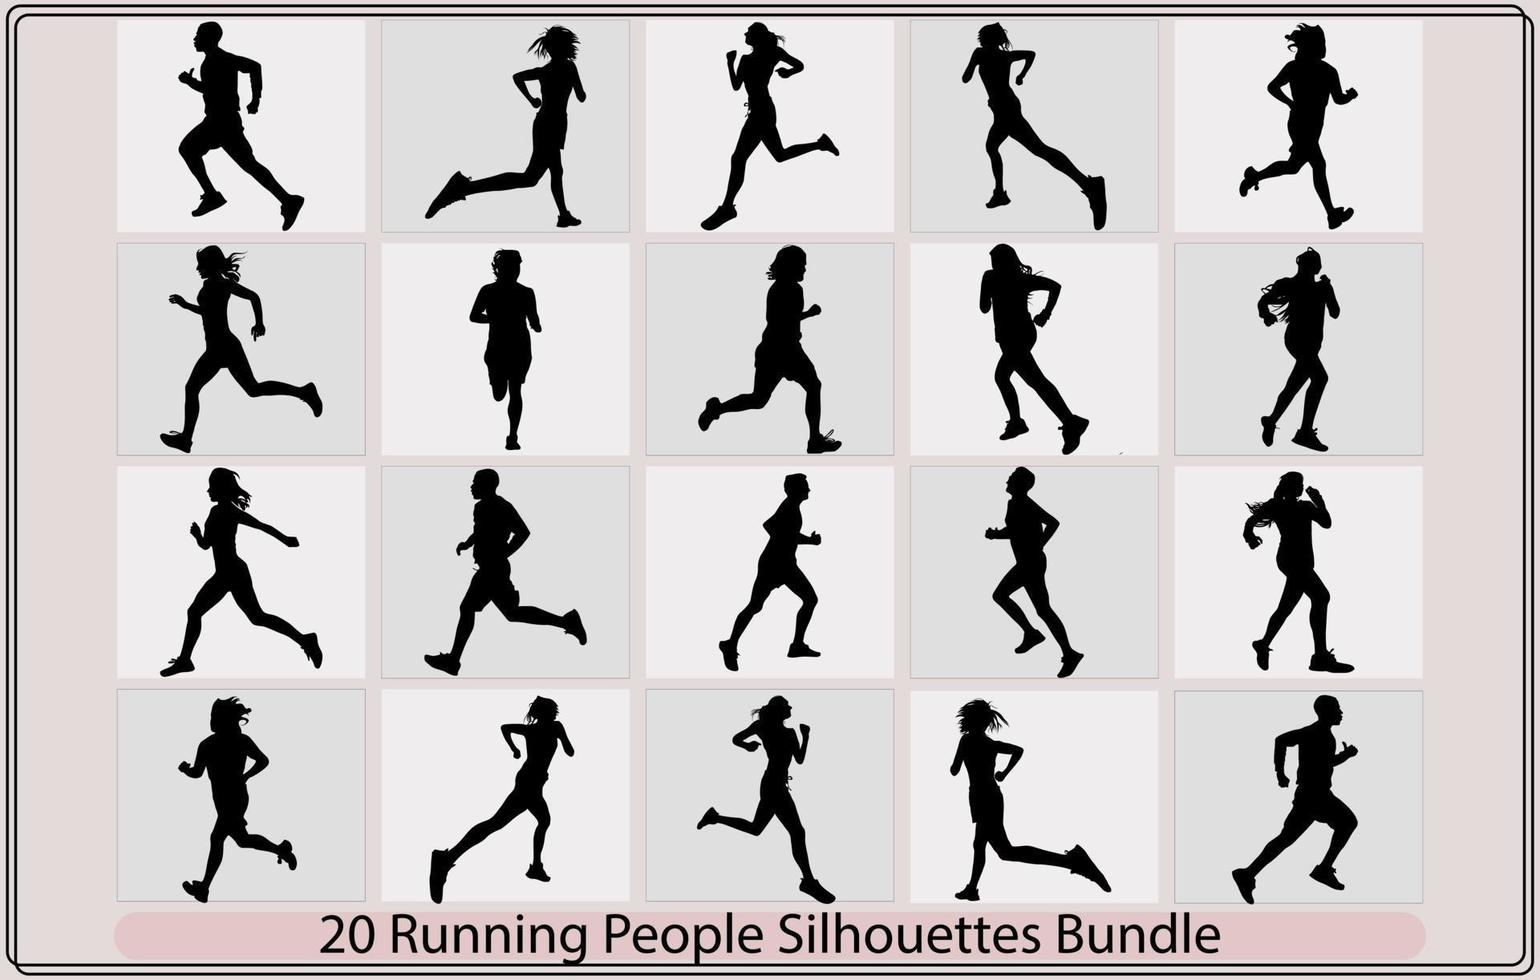 Laufen Männer und Frauen Silhouetten, eingestellt von Silhouetten von Laufen Männer und Frauen. Vektor, laufen, gruppieren von Laufen Menschen, Männer und Frauen vektor